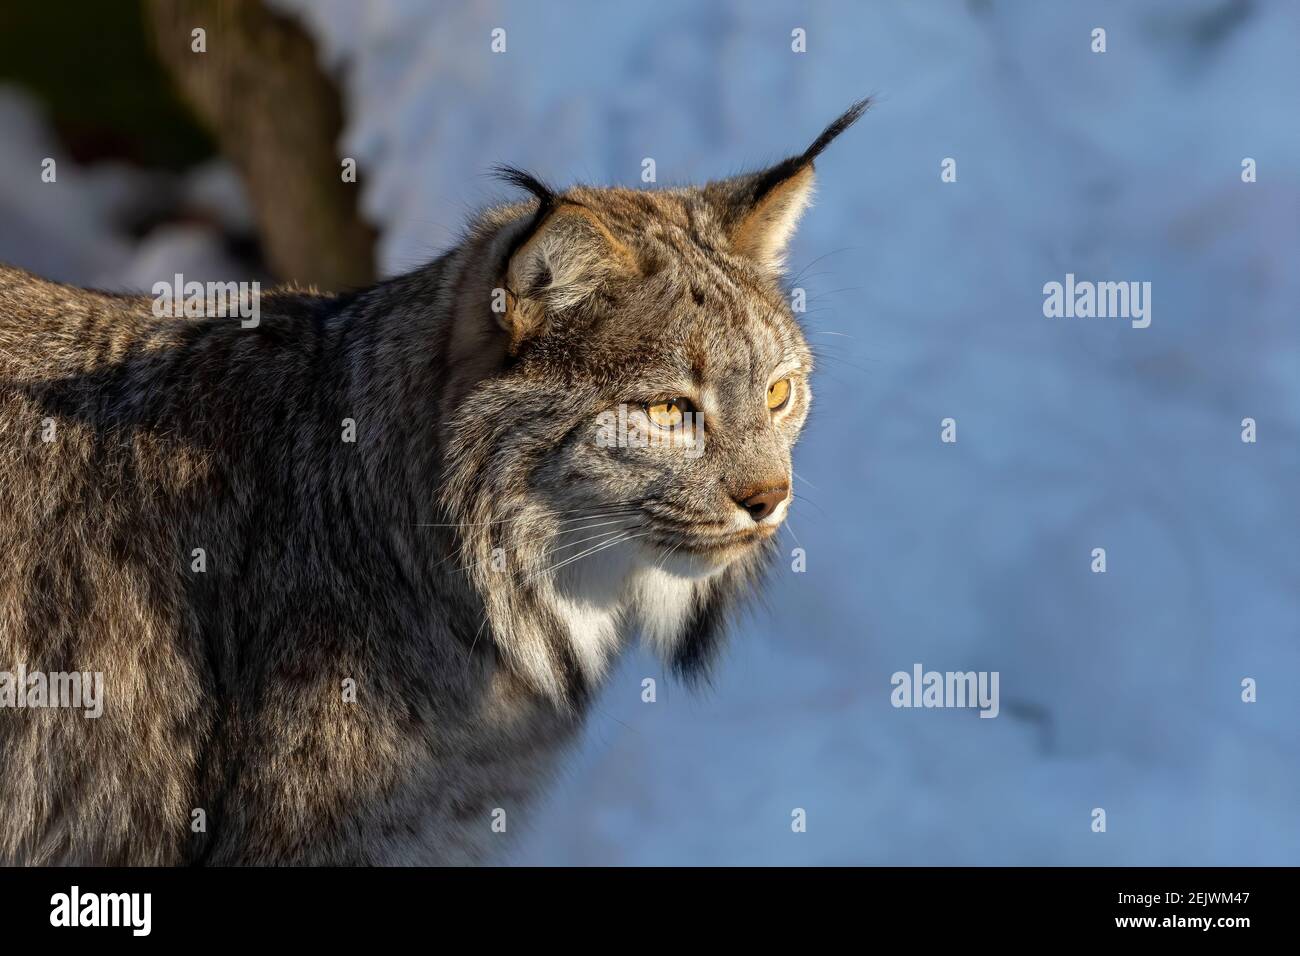 Le lynx du Canada (Lynx canadensis). Prédateur vivant dans les territoires du nord des États-Unis et du Canada. Scène du Wisconsin. Banque D'Images